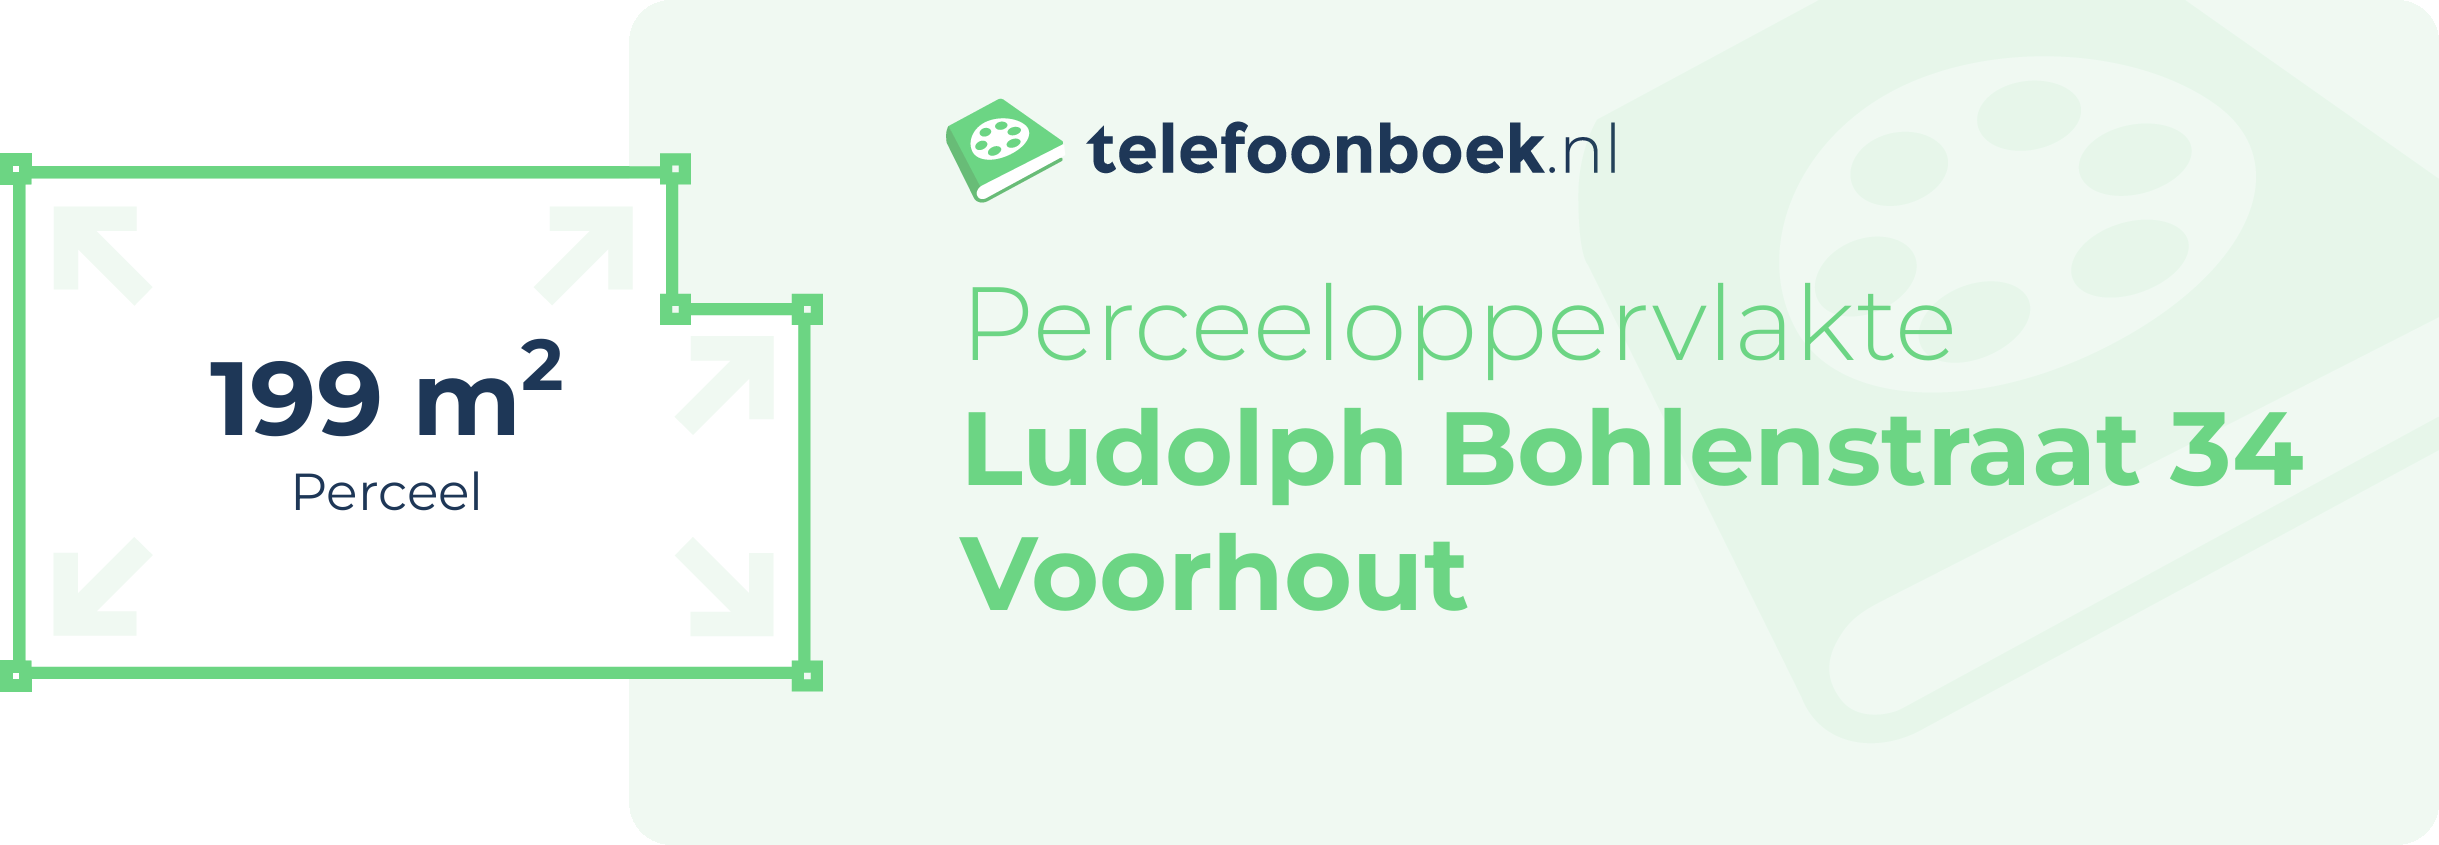 Perceeloppervlakte Ludolph Bohlenstraat 34 Voorhout